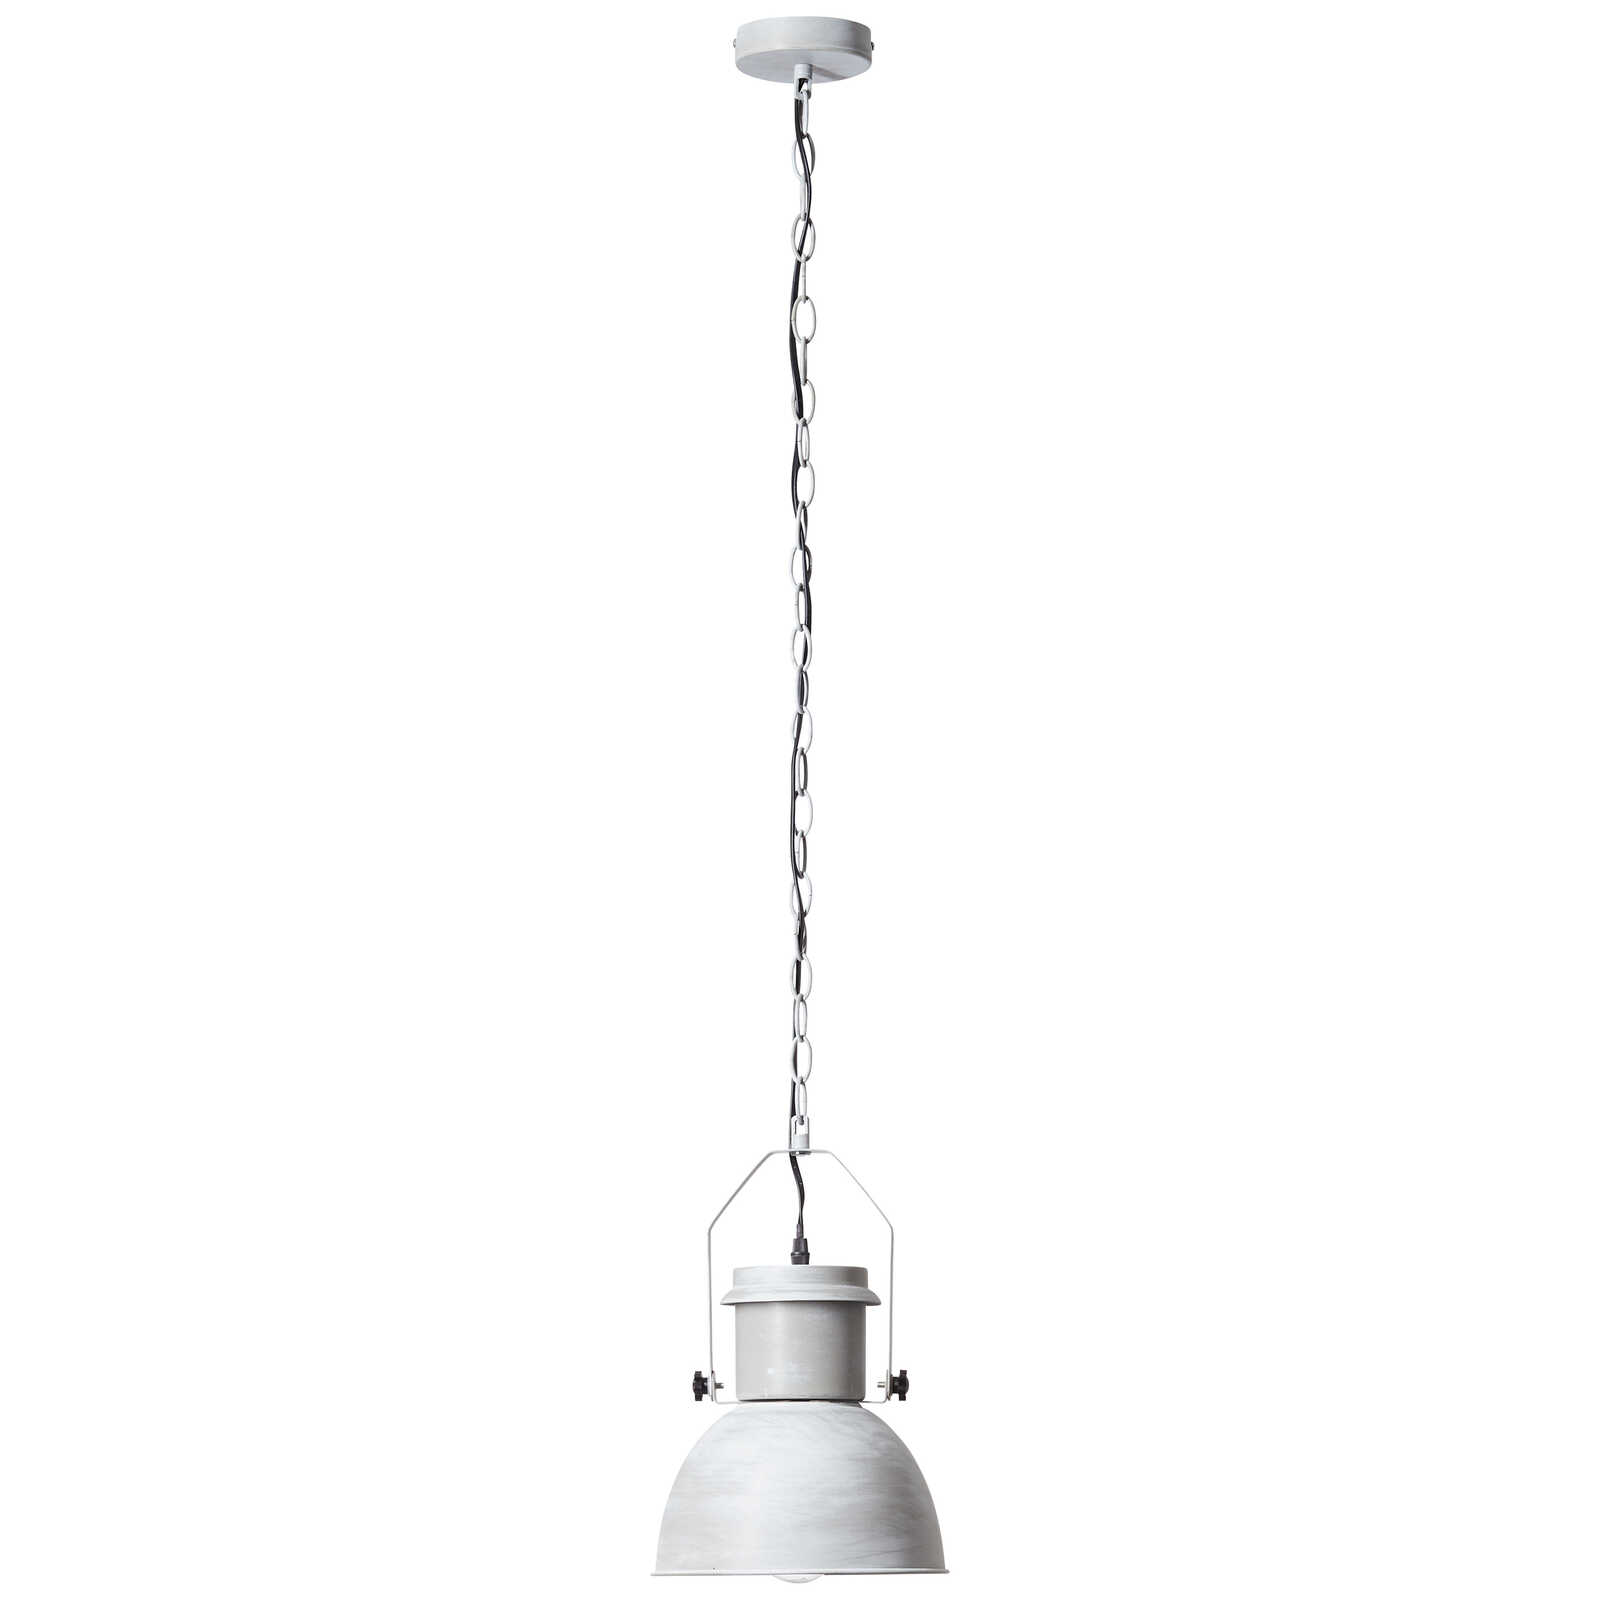             Metalen hanglamp - Milo 1 - Grijs
        